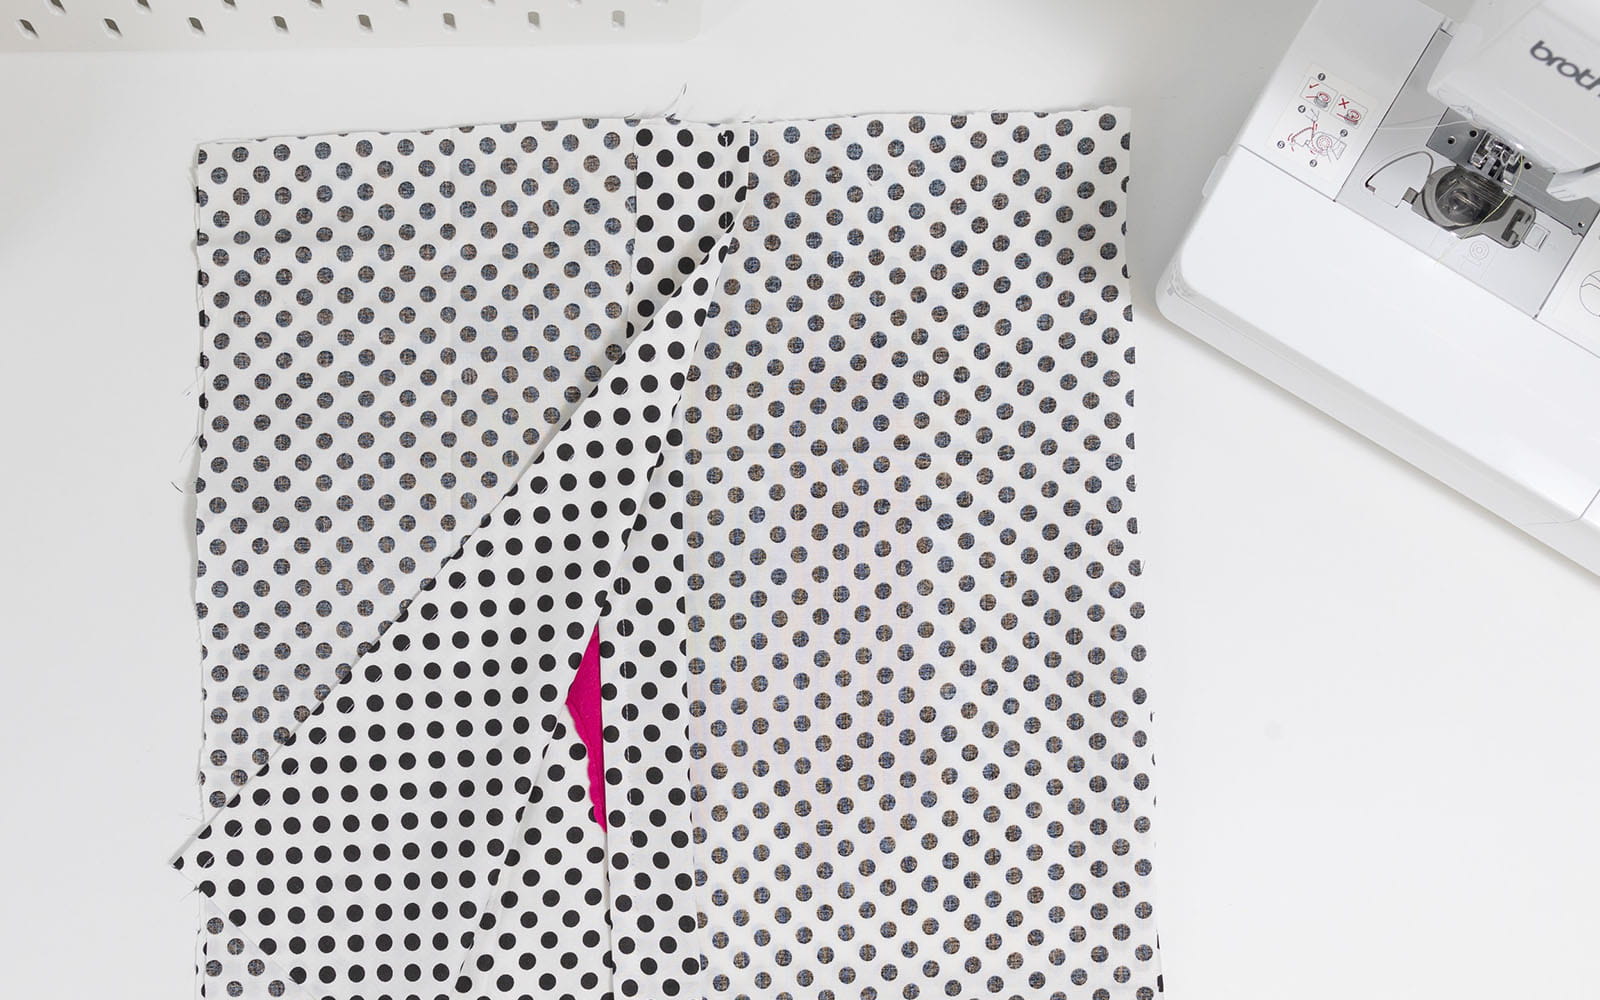 Spotty kussenhoes naaistukken aan elkaar vastgemaakt op bureau